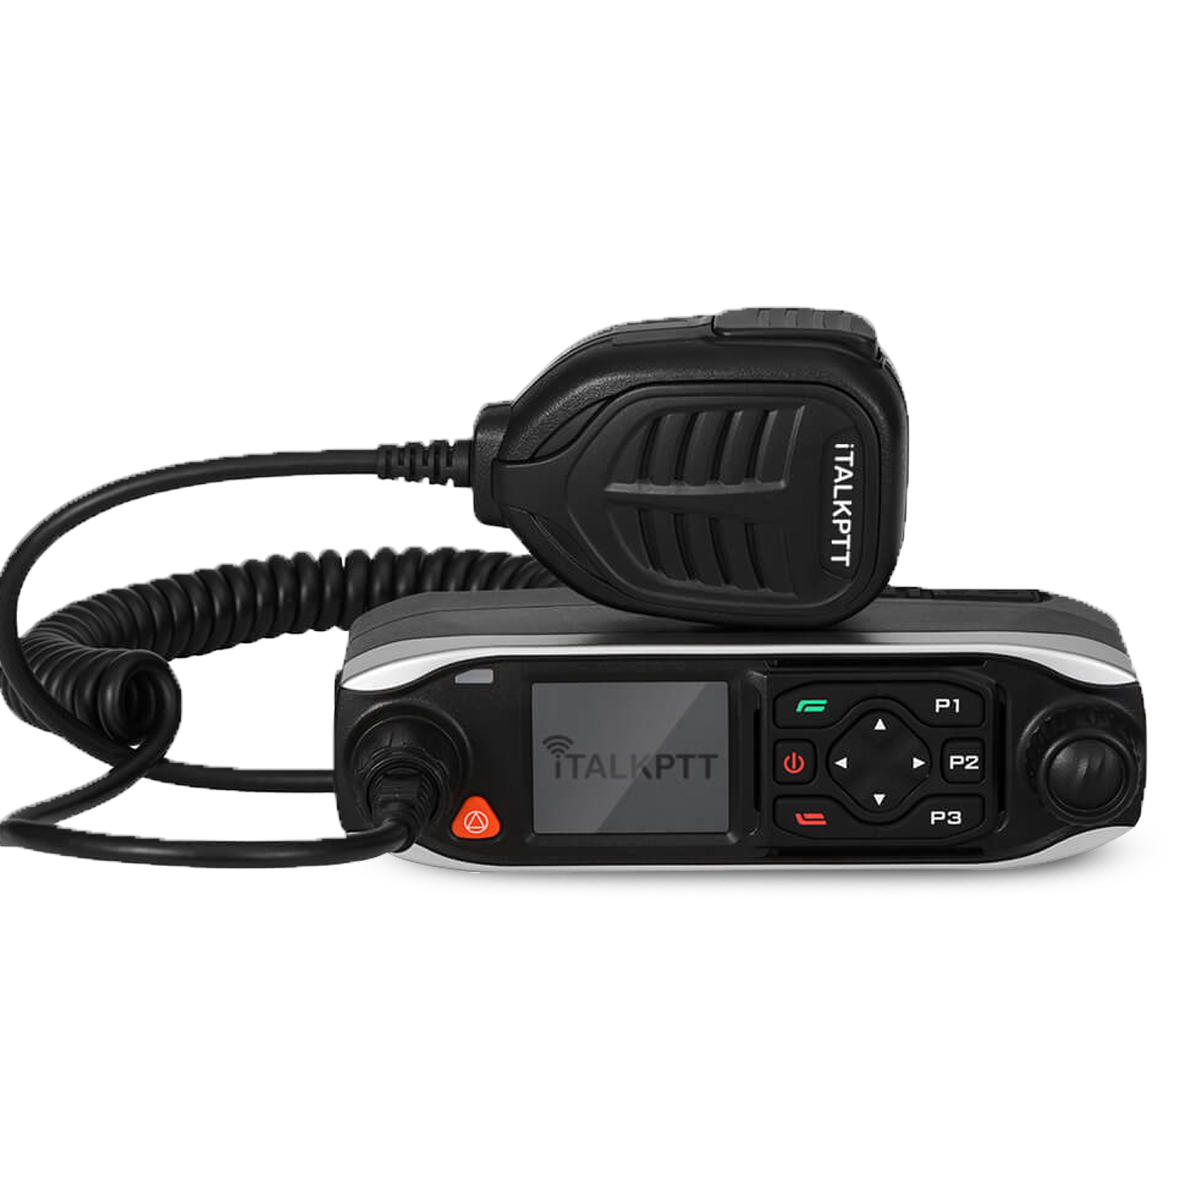 Radio móvil ITALK450 iTALKPTT EMEA Red 3G-4G